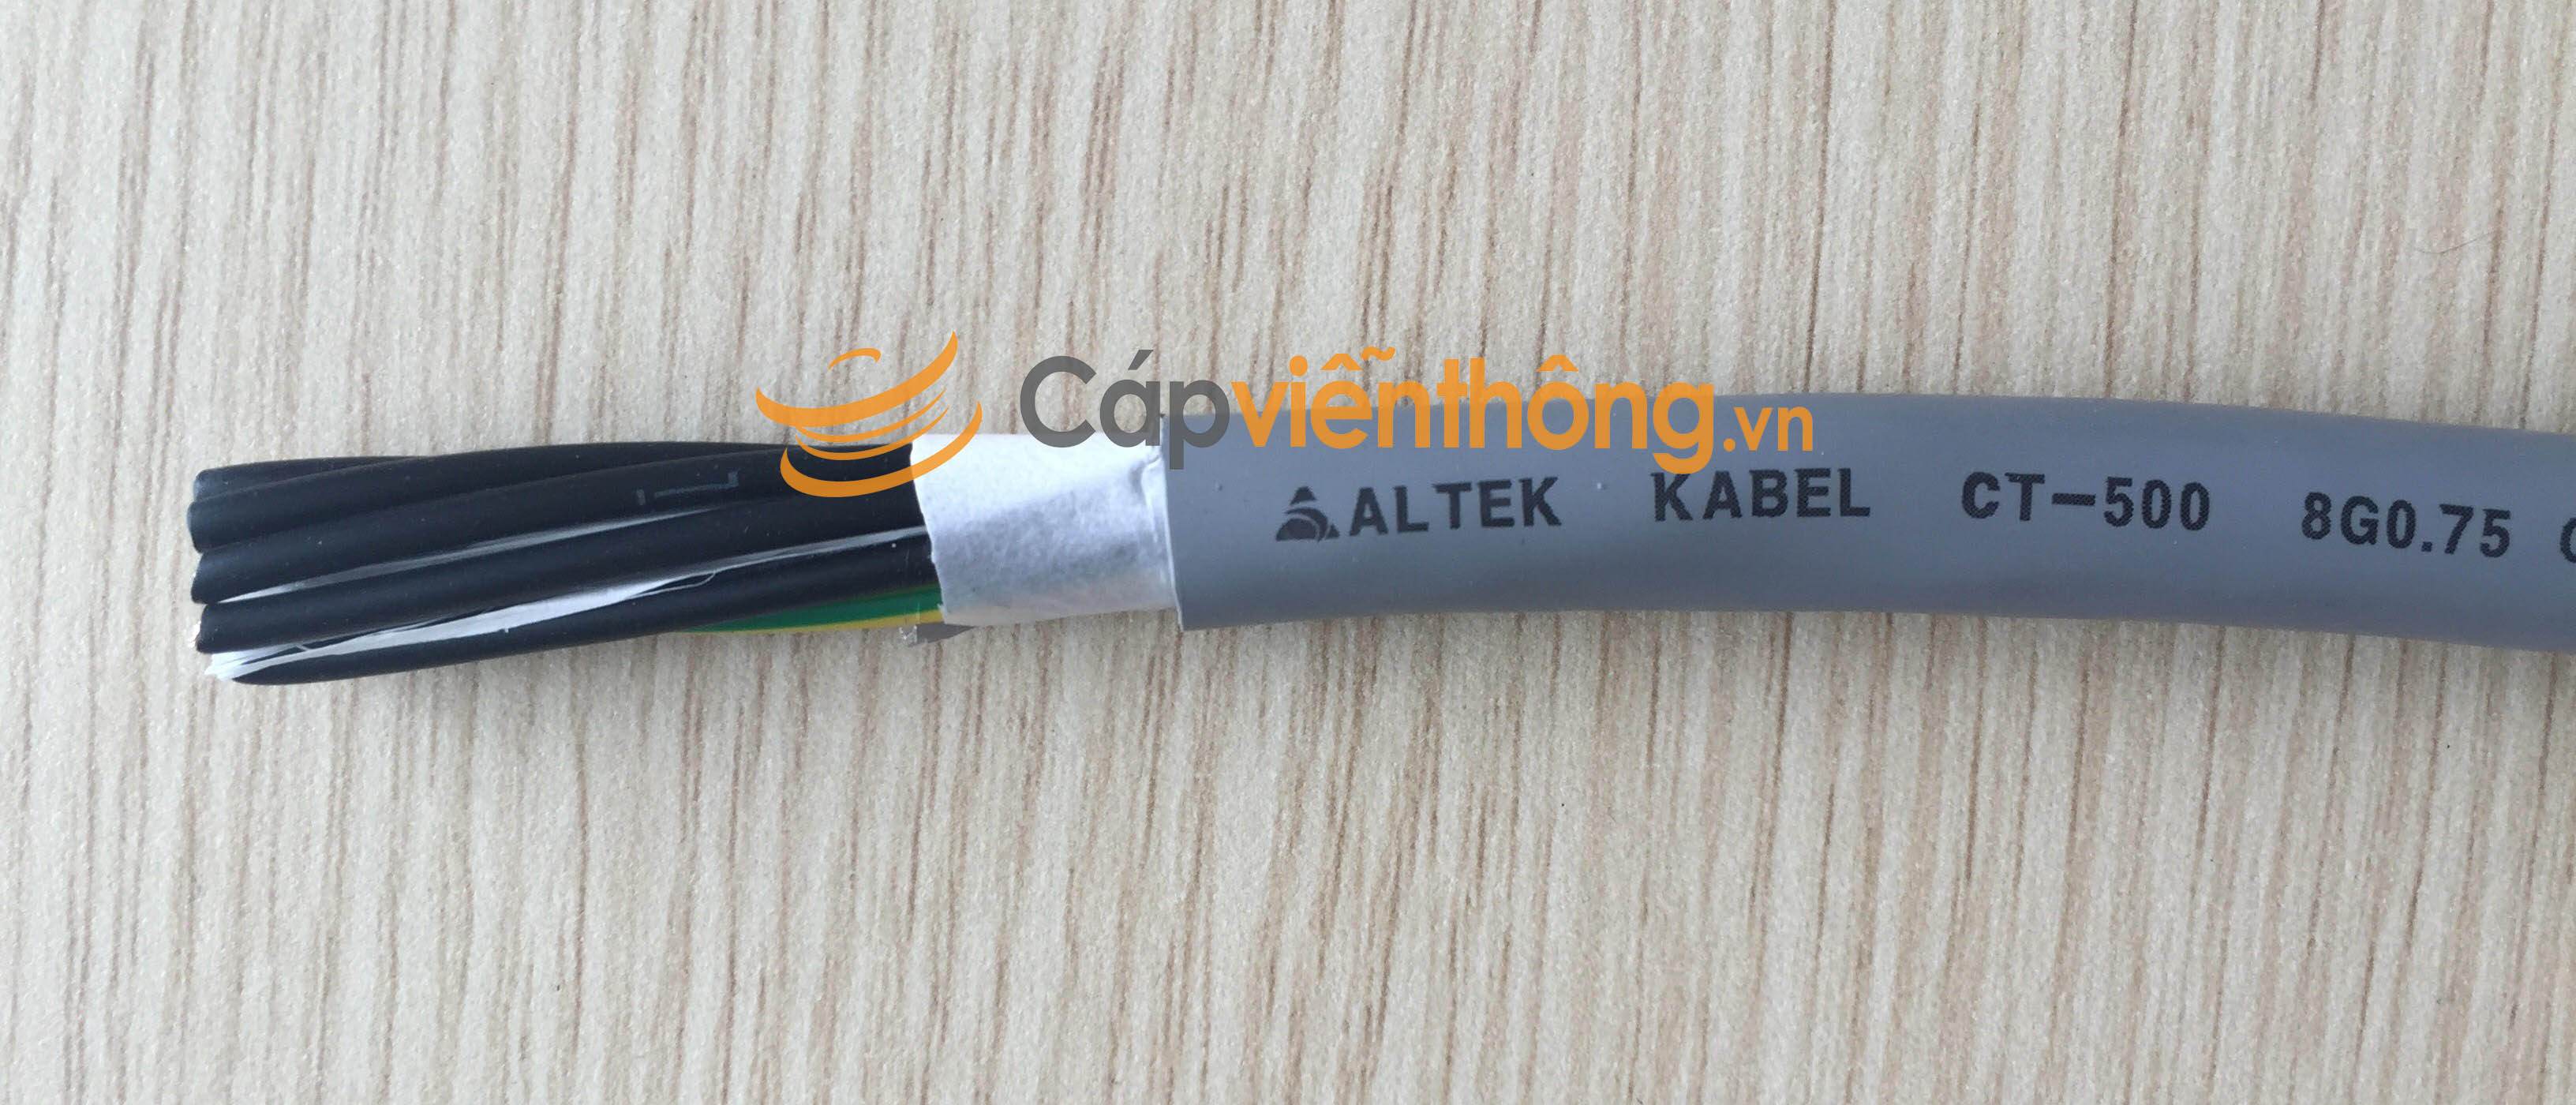 Cáp điều khiển không lưới Altek Kabel CT-10758 8G 0.75QMM